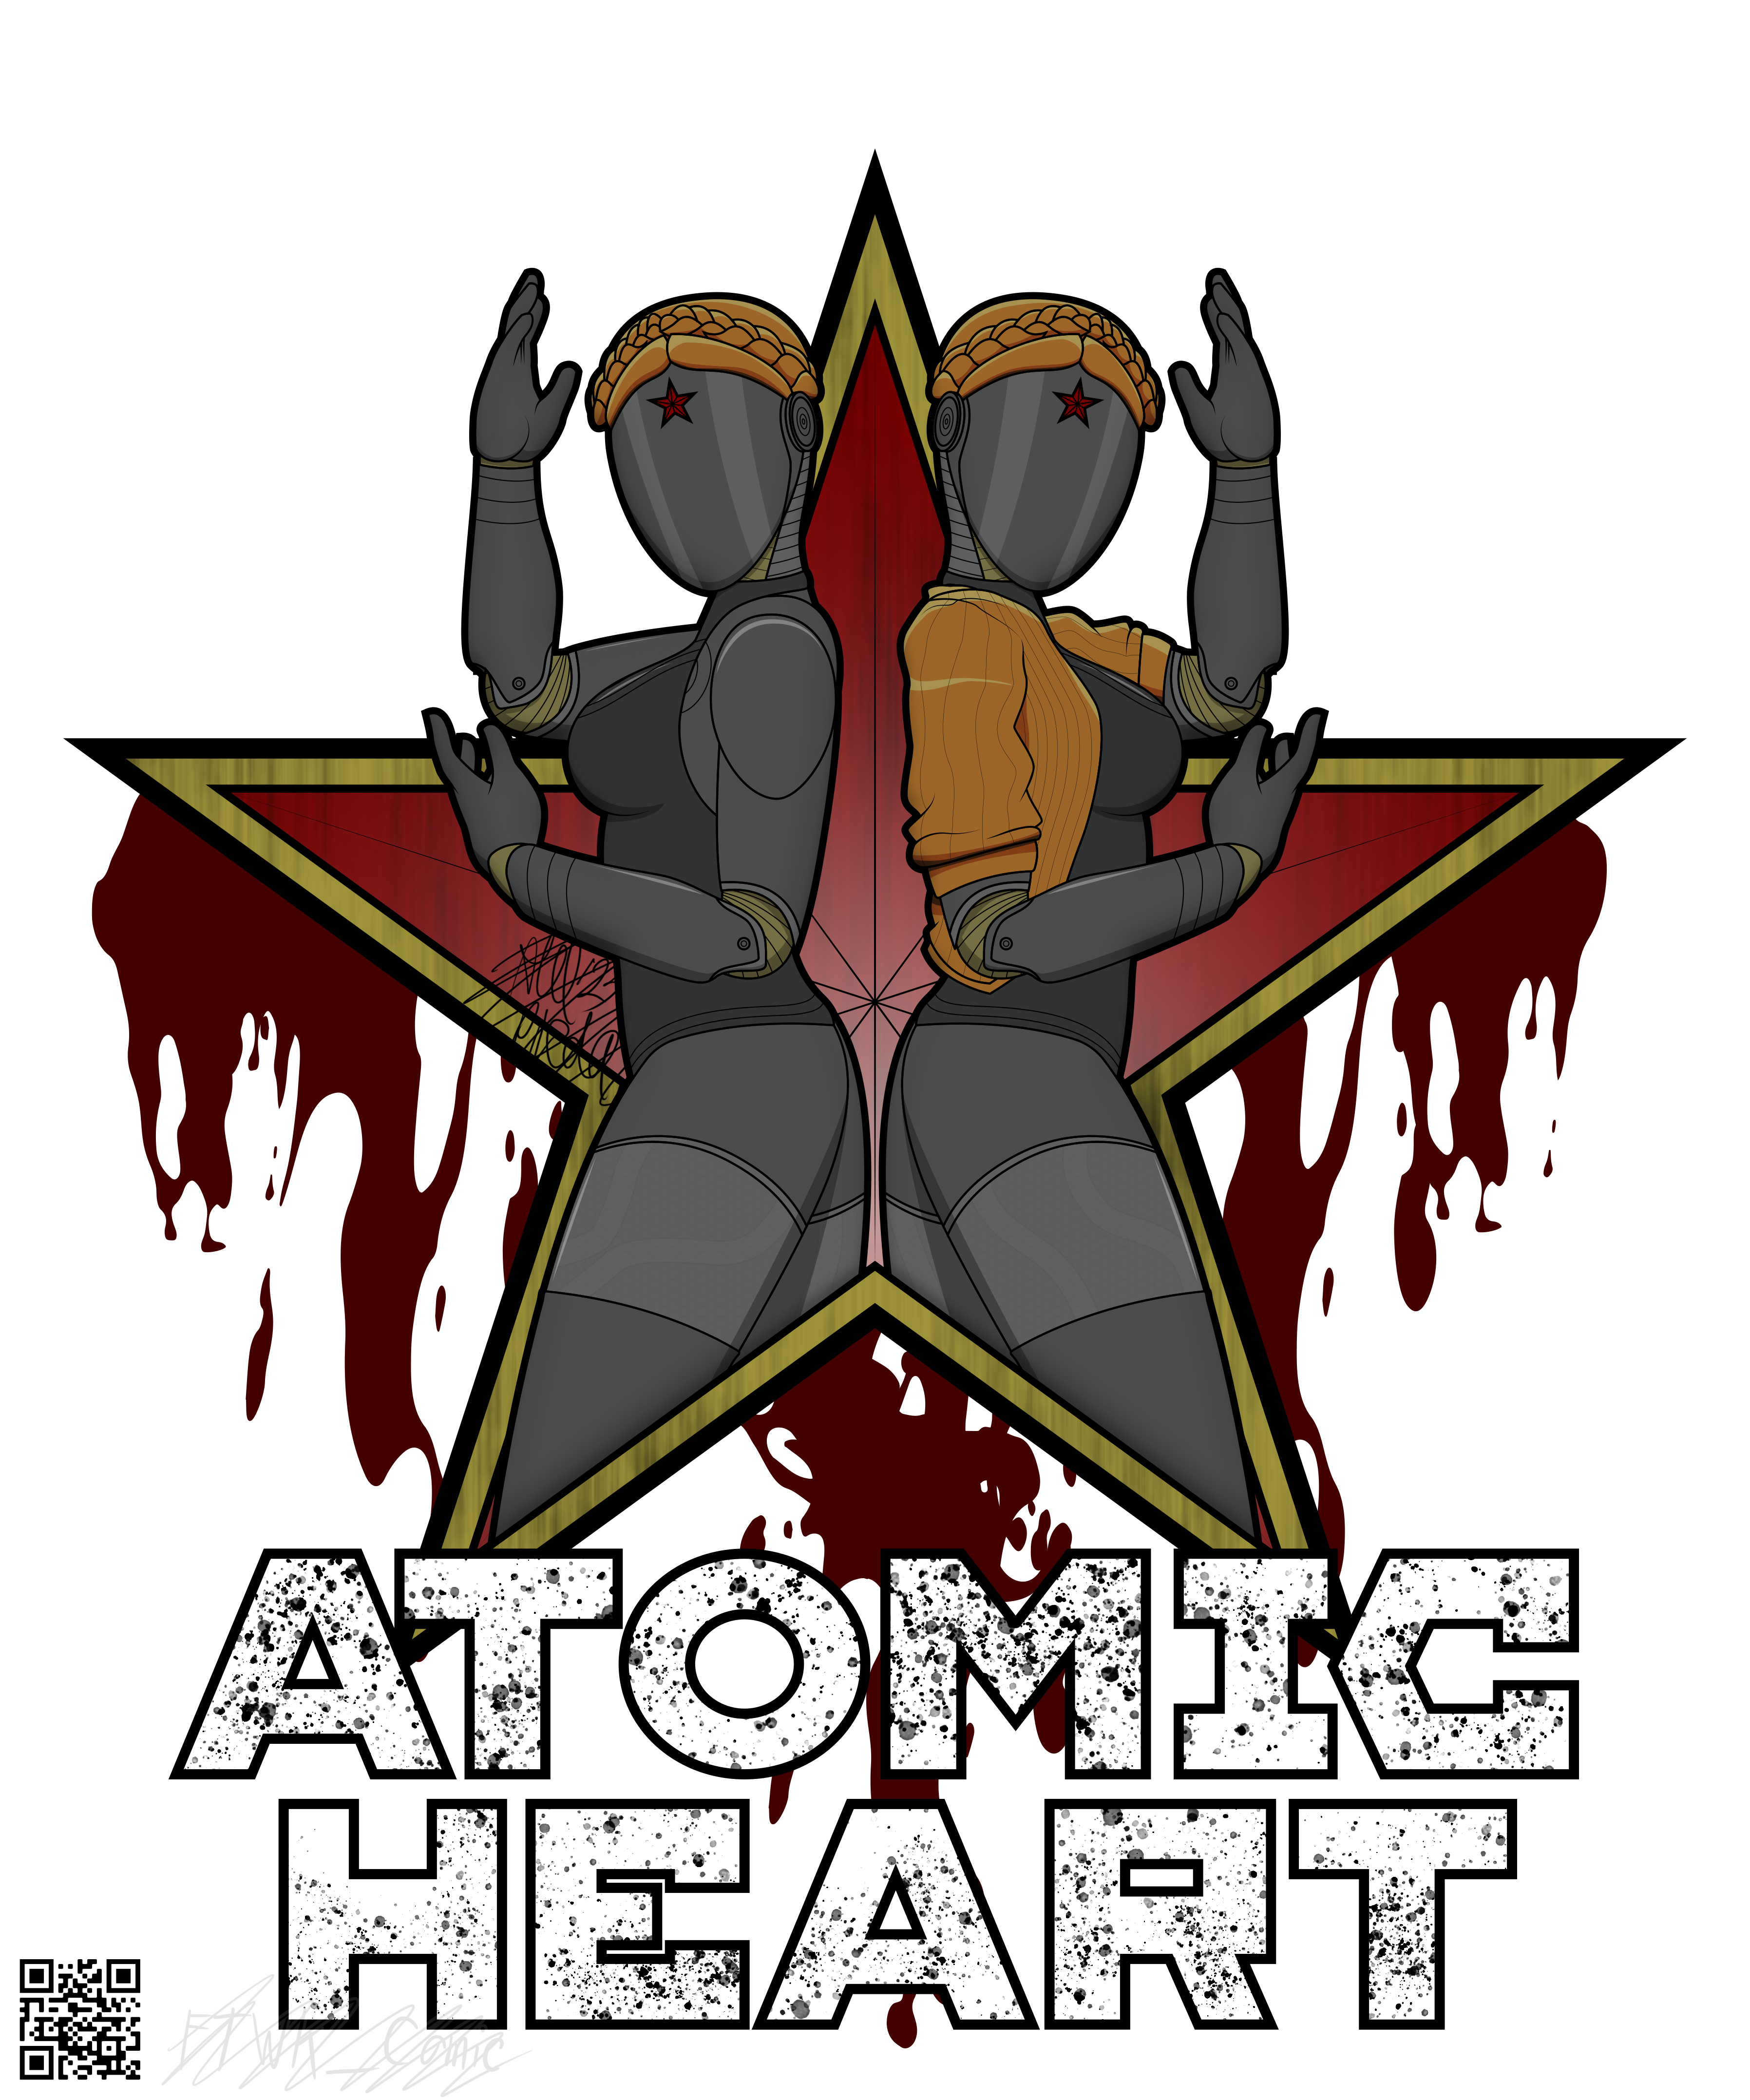 Atomic Heart Fan art, David Díaz López in 2023